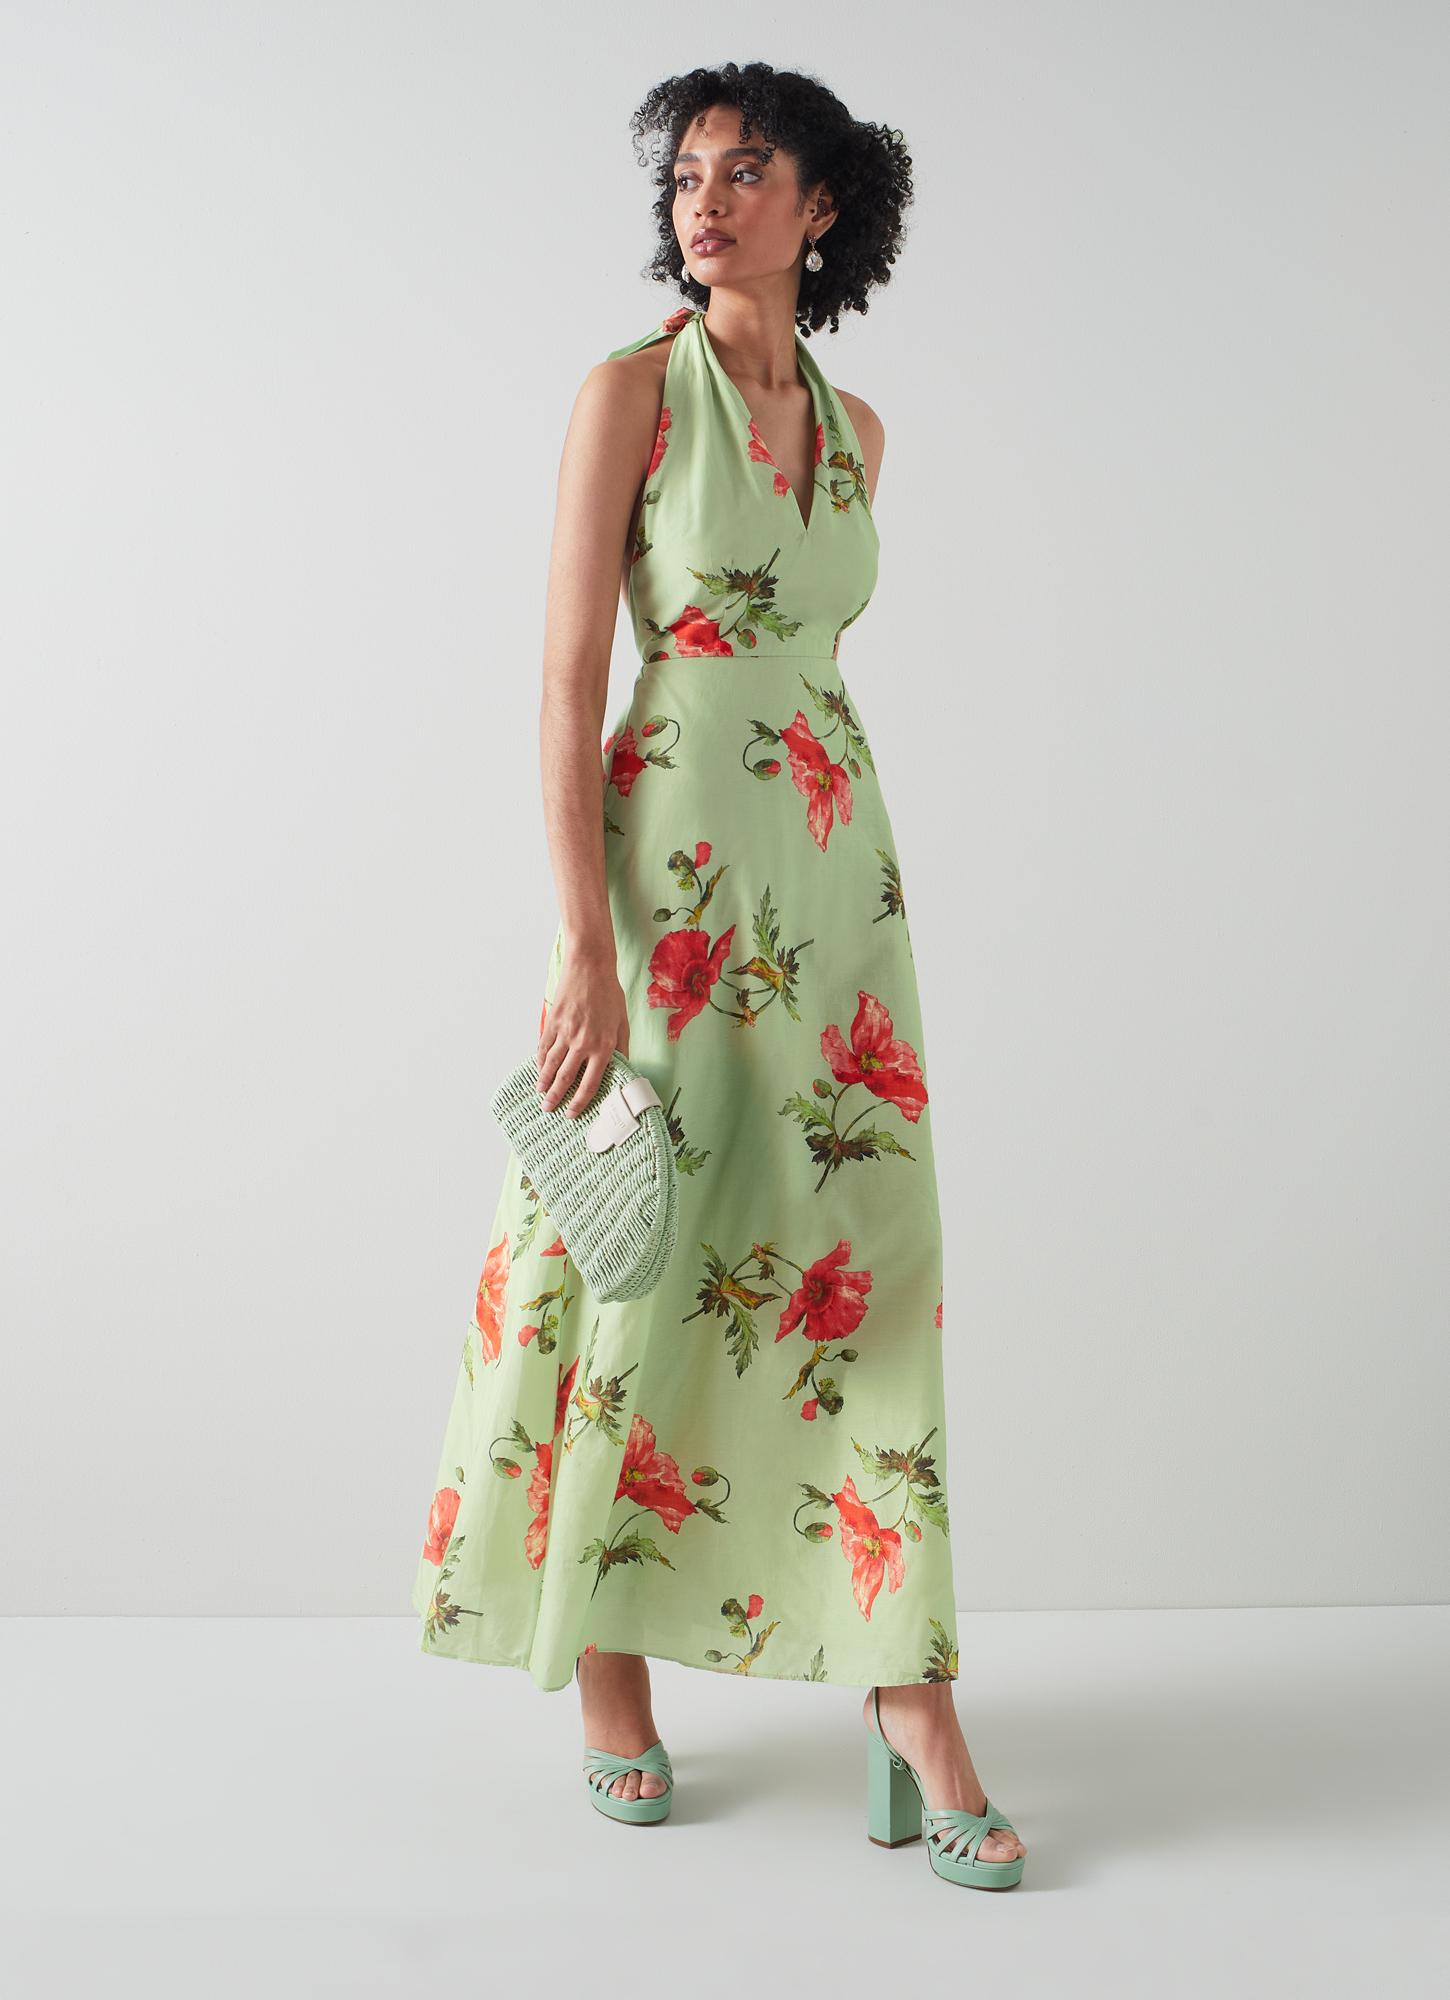 Kristen Pistachio Poppy Print Cotton-Silk Backless Dress Green, Green